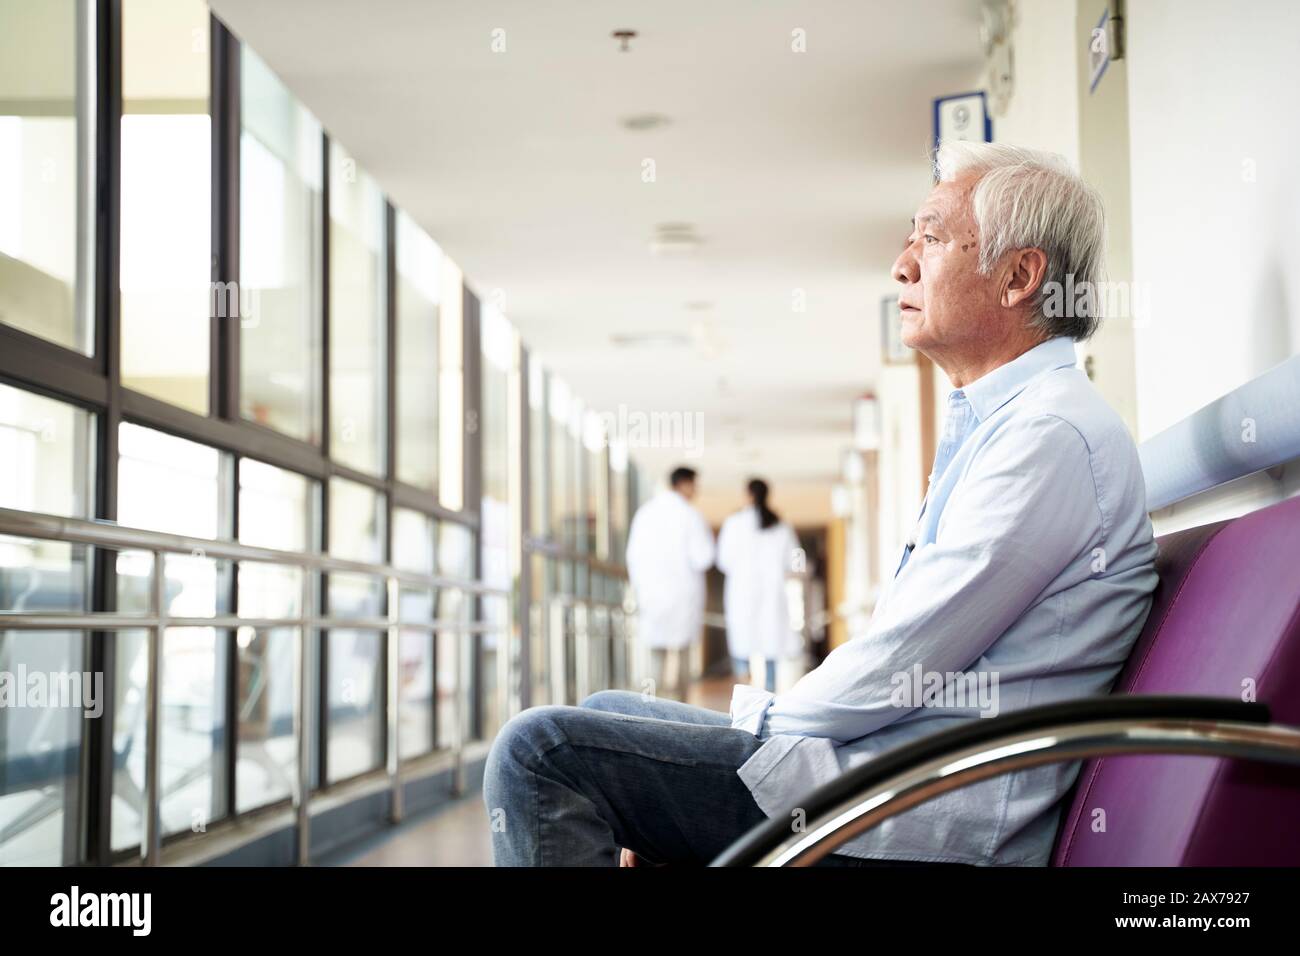 vecchio asiatico seduto nel corridoio dell'ospedale che guarda triste e depresso Foto Stock